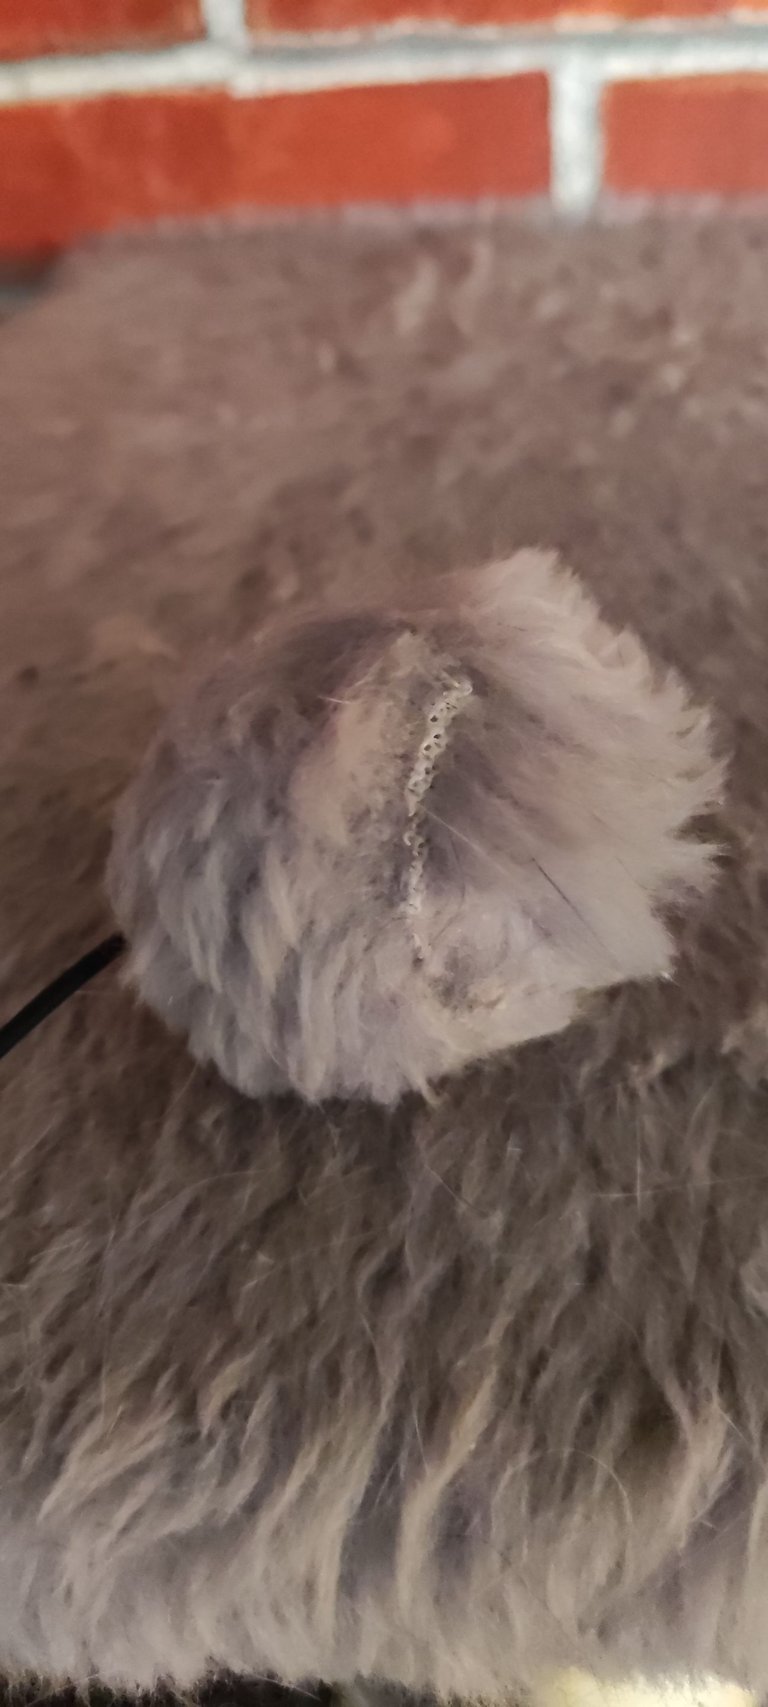 my catnip ball